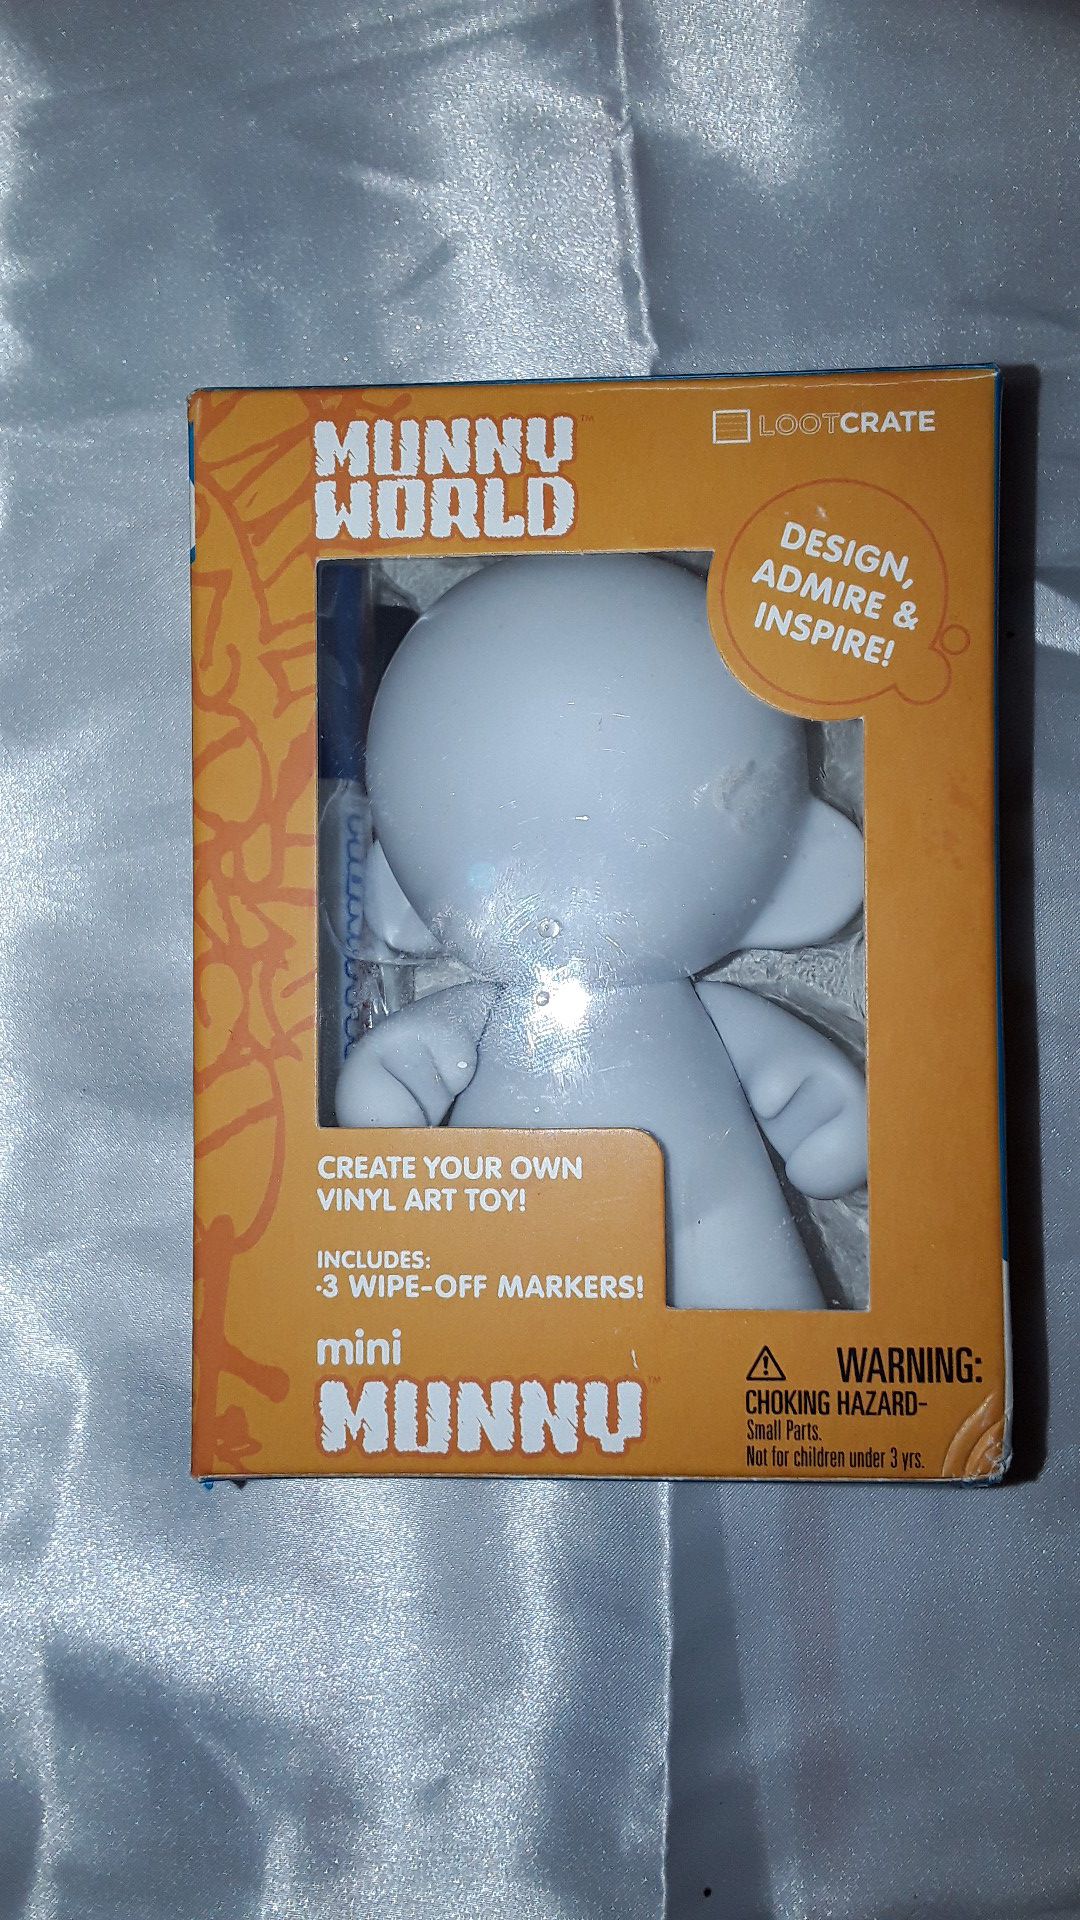 Munny World - Mini-Munny - Blank vinyl art toy BY kidrobot